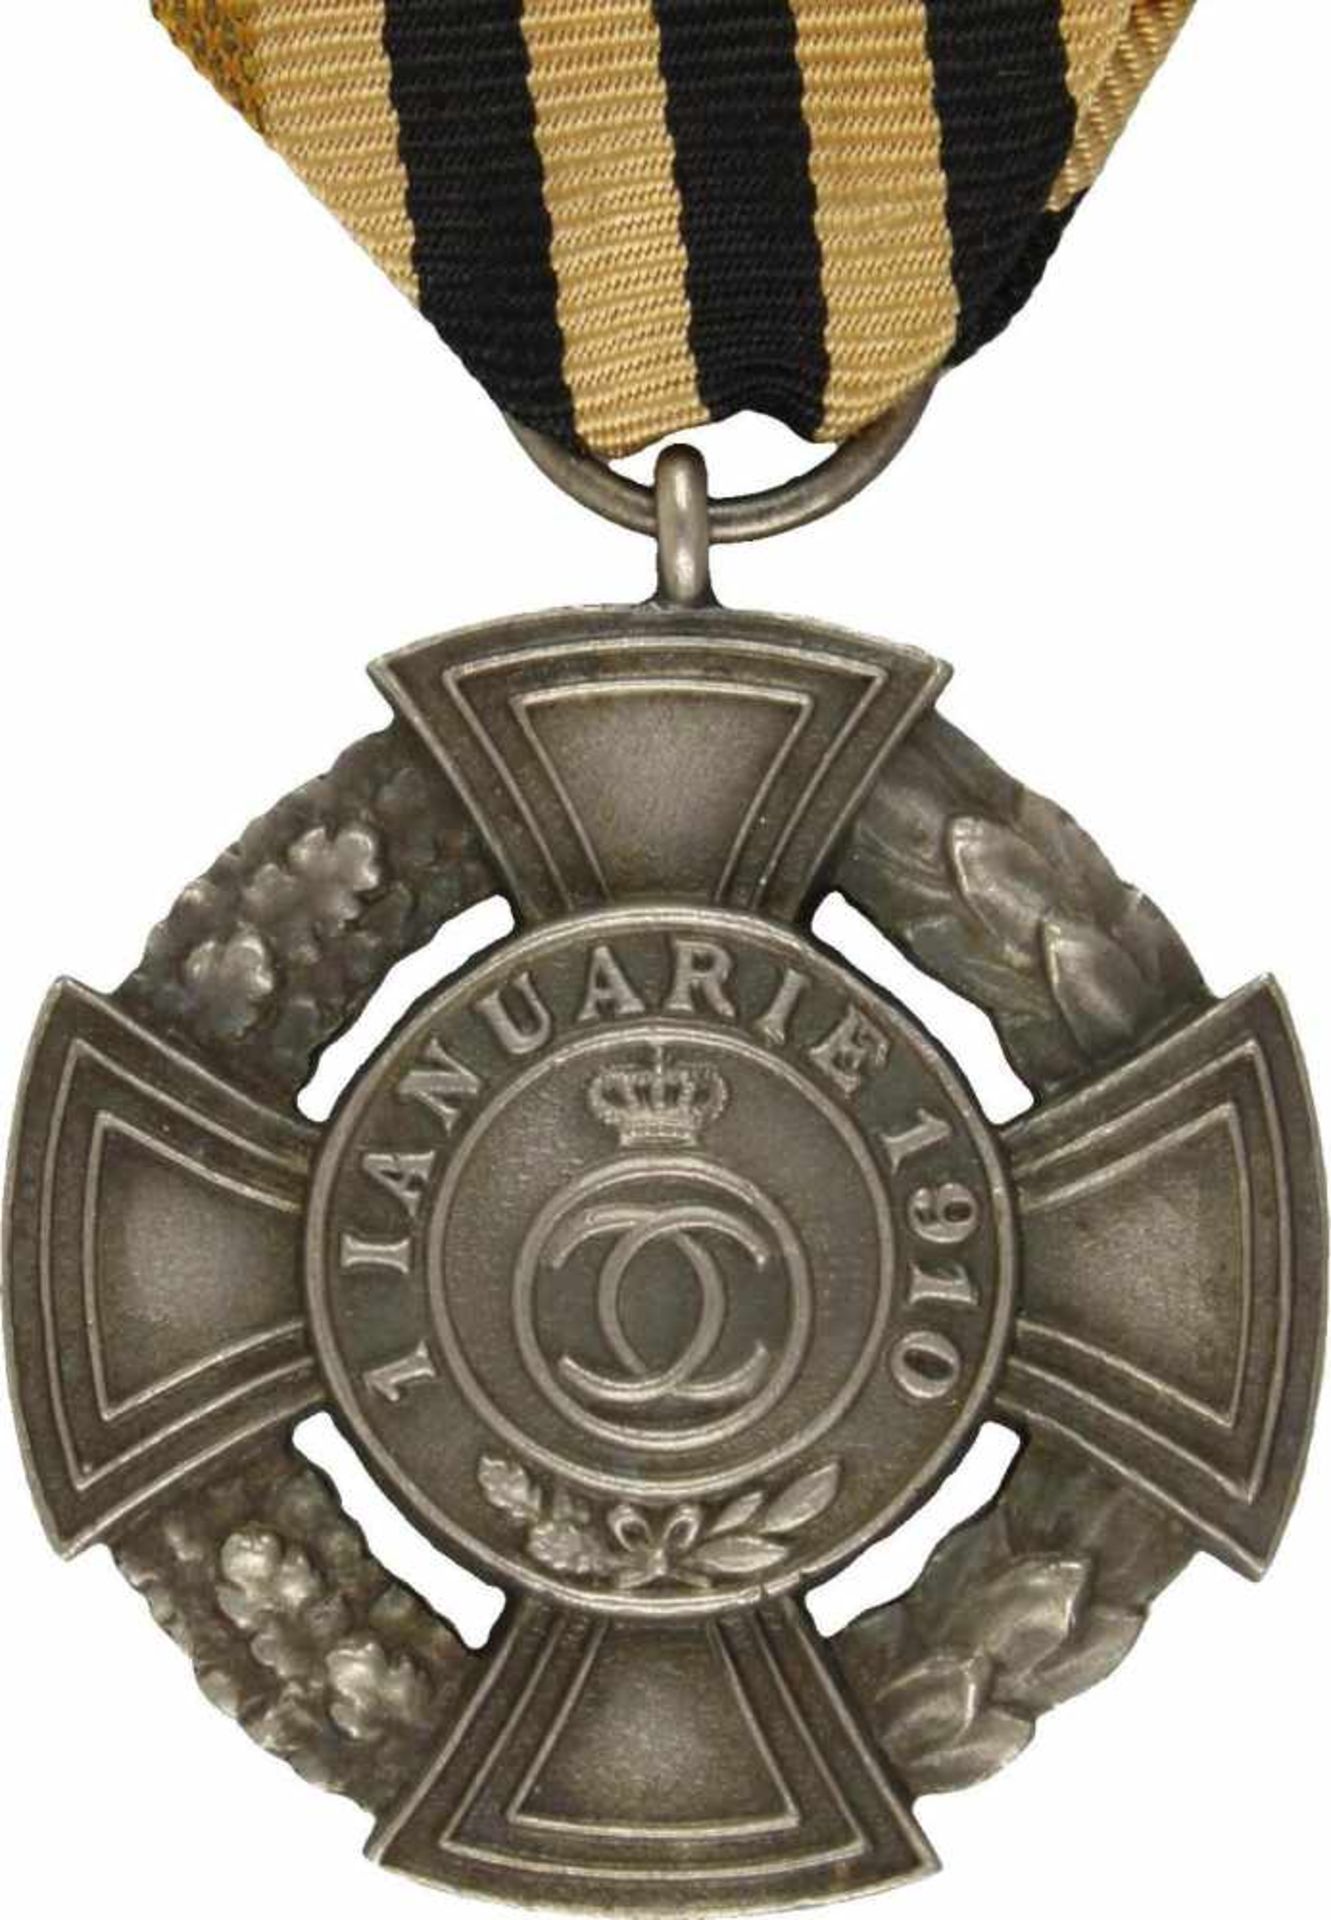 Königl. Rumänischer Ordendes Regierenden Hauses, Silbernes Verdienstkreuz. Kreuz Bronze